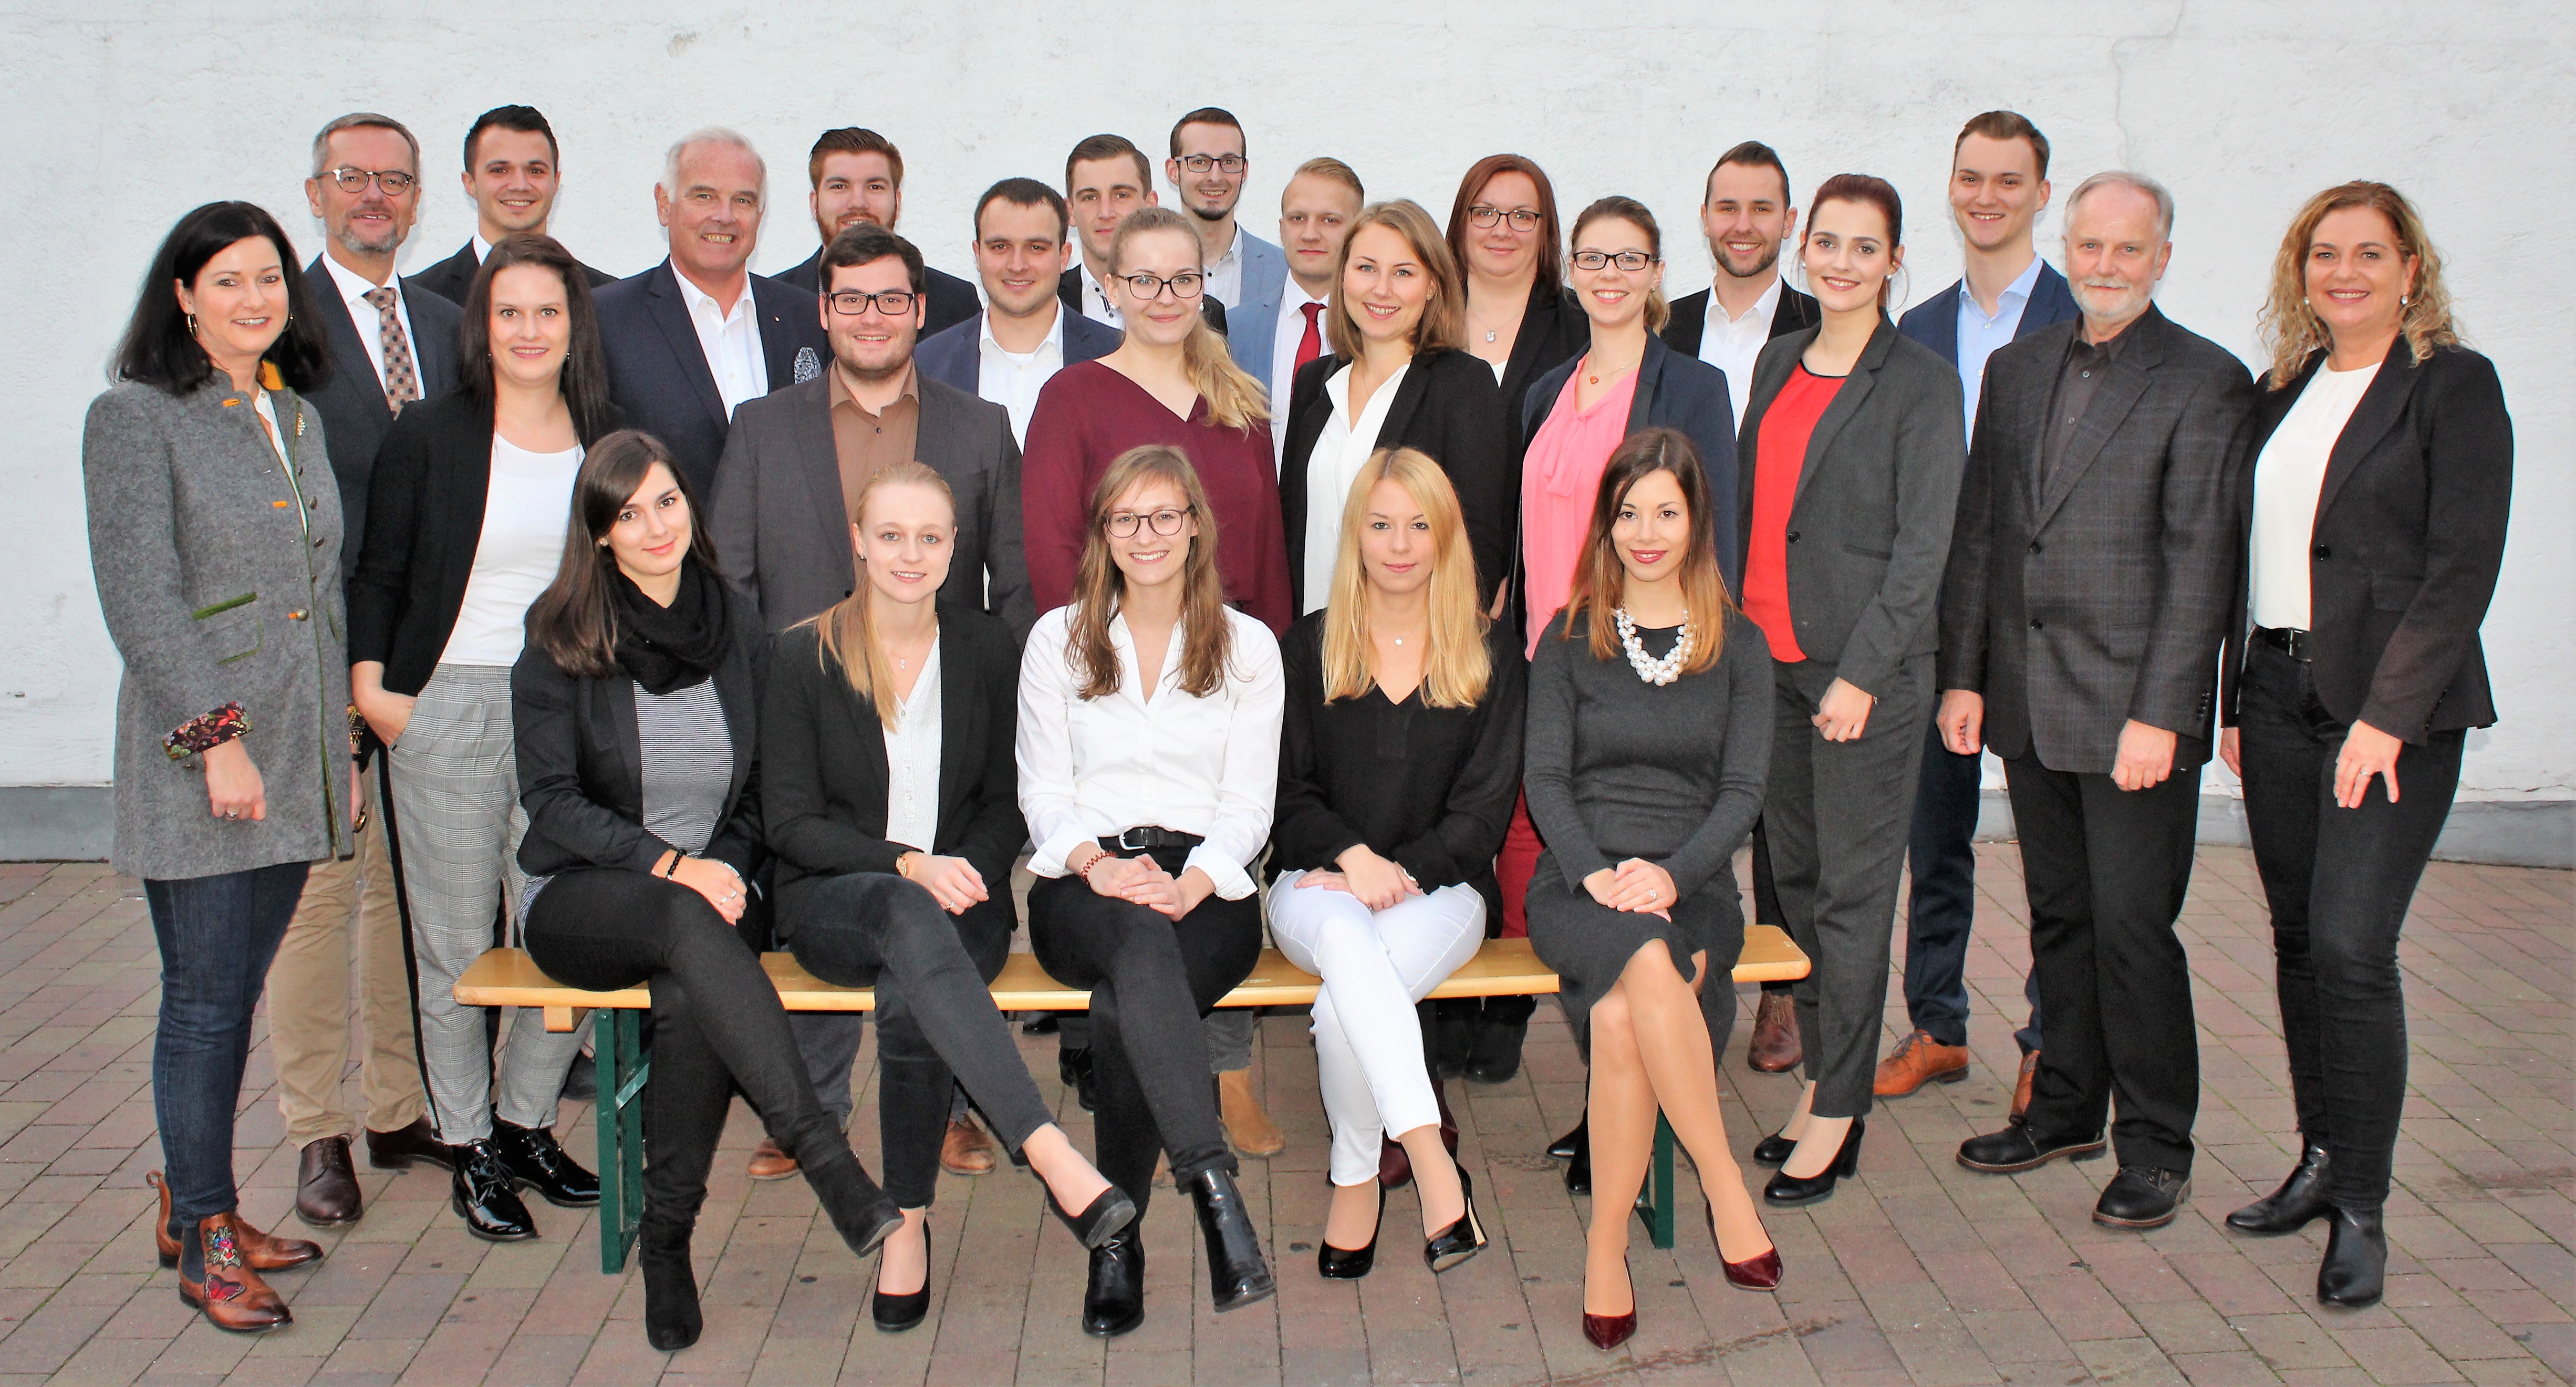 Gratulationsfeier aller erfolgreichen Absolventinnen und Absolventen der Sparkasse Dieburg!